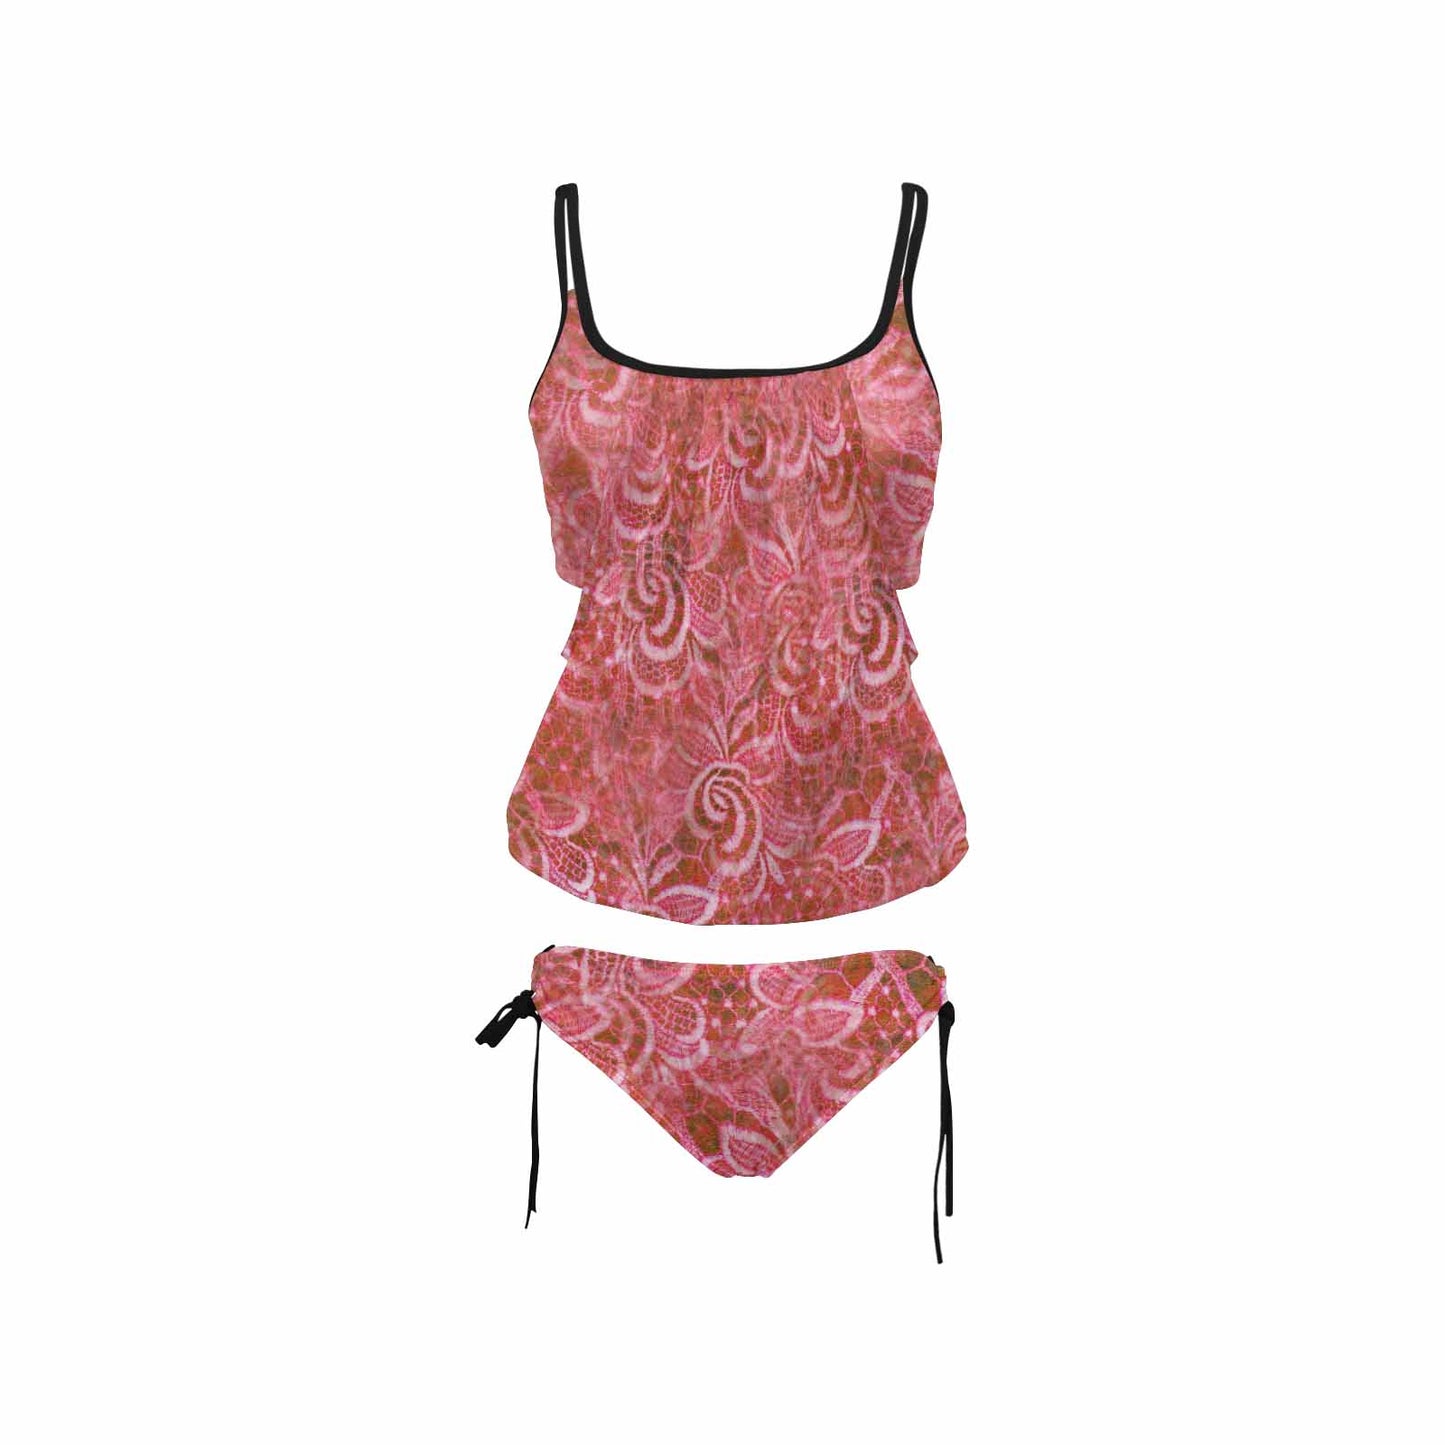 Tankini cover belly swim wear, Printed Victorian lace design 33